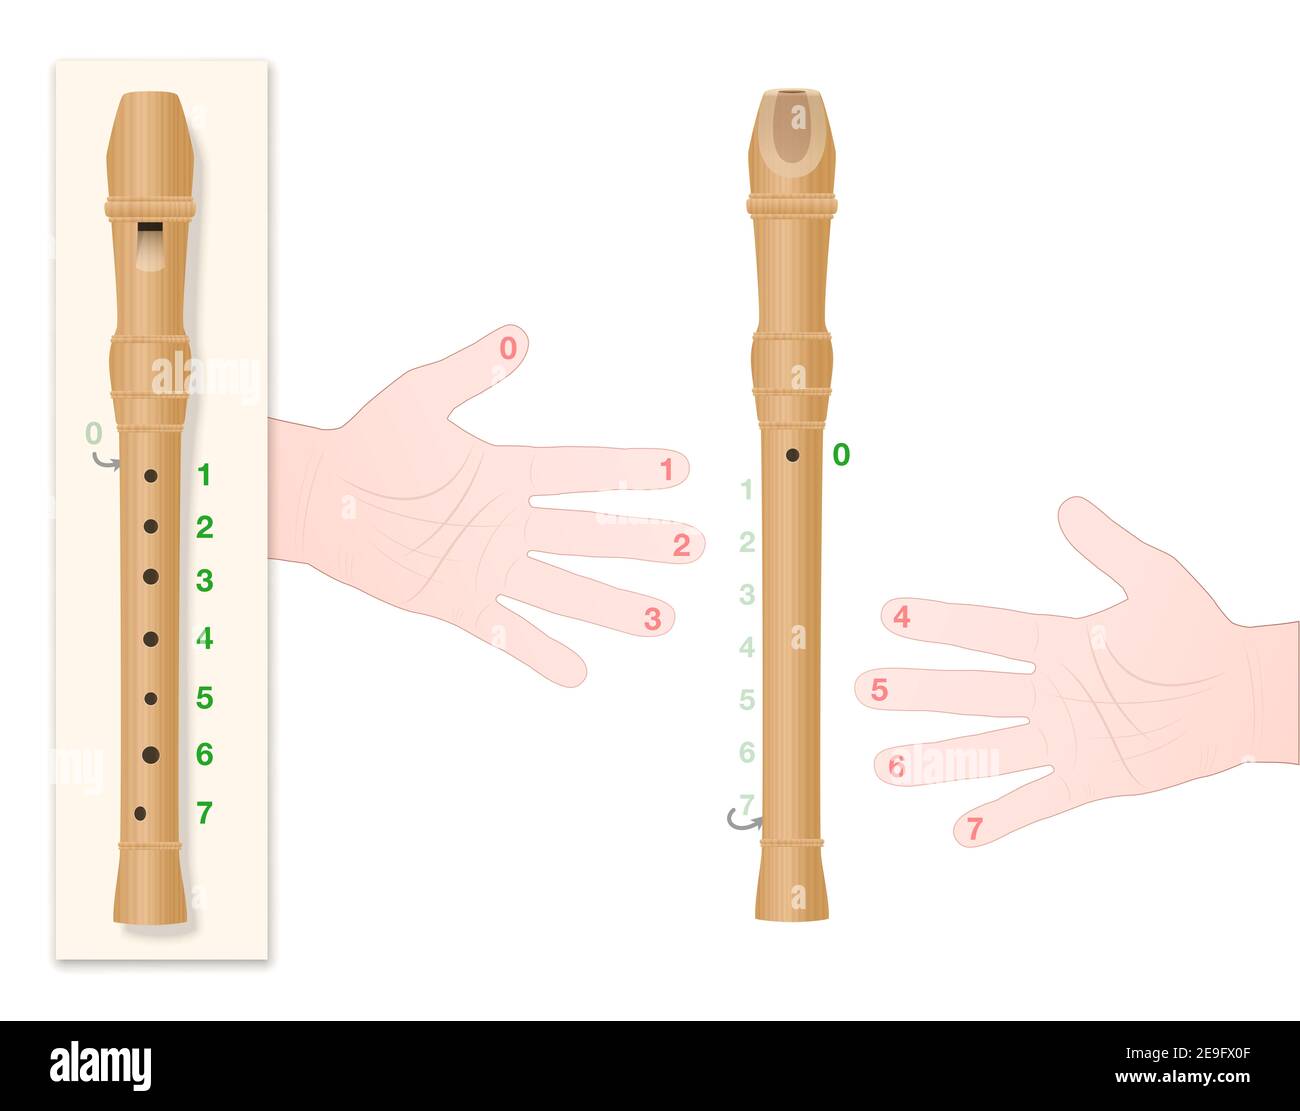 Enregistreur avec la position correcte de la main, les doigts numérotés et les trous correspondants de l'instrument pour apprendre à lire correctement cette musique. Banque D'Images